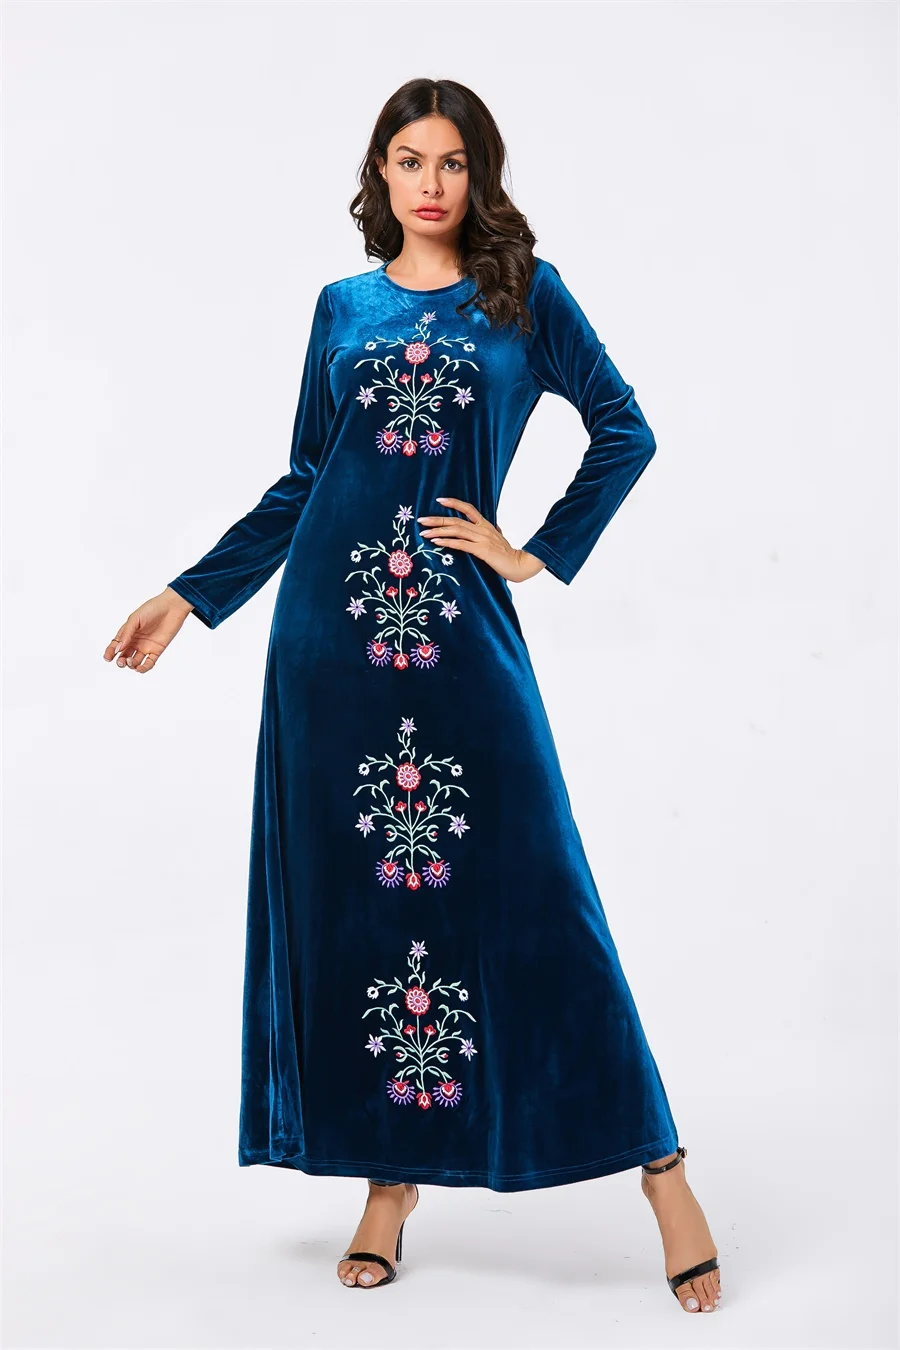 Siskakia осень, женское платье с длинным рукавом, вельветовое, длиной до лодыжки, мусульманское повседневное длинное платье размера плюс, новинка, шикарная Цветочная вышивка